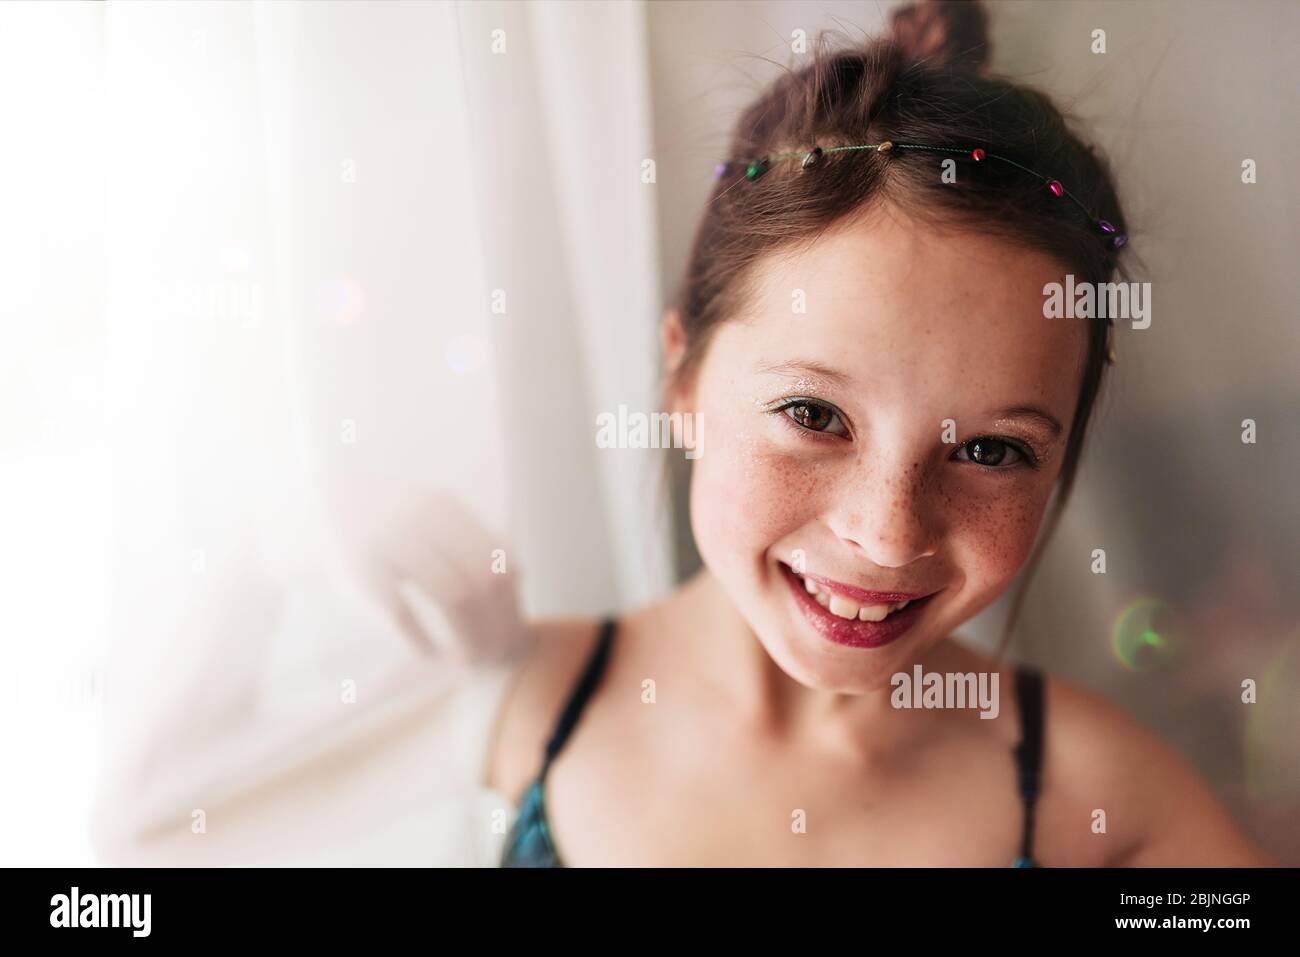 Ritratto di una ragazza giovane che indossa make-up in piedi da una tenda Foto Stock